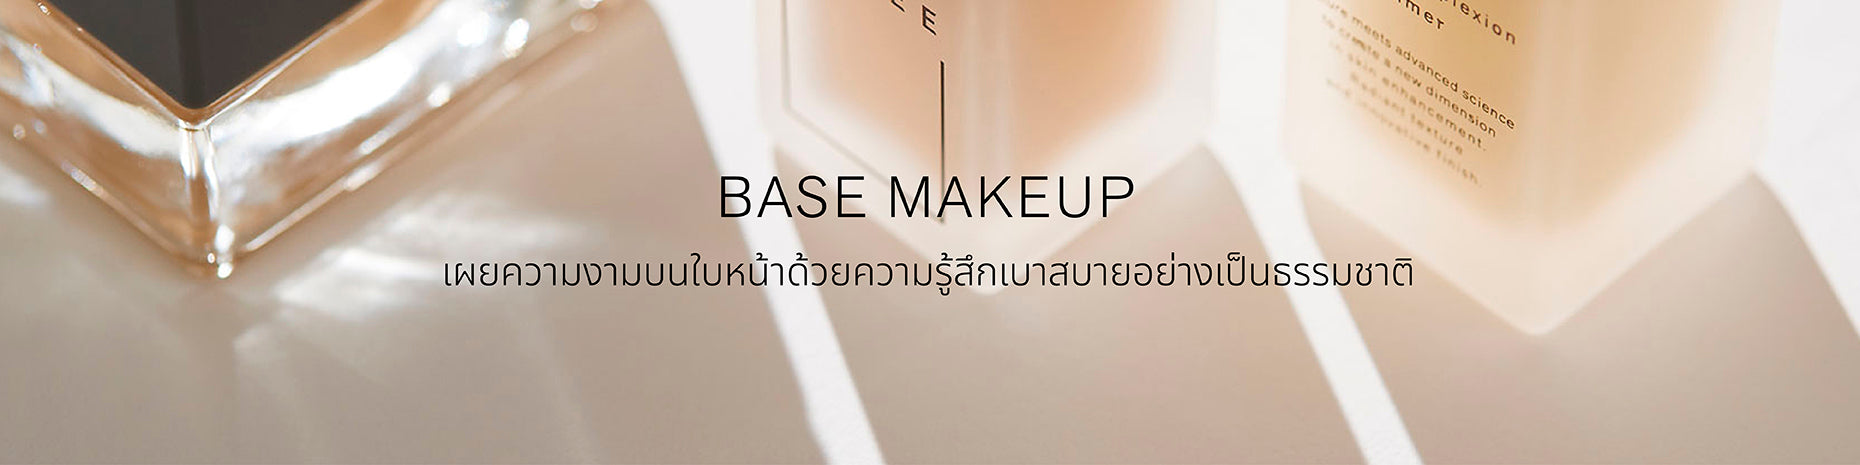 Base makeup